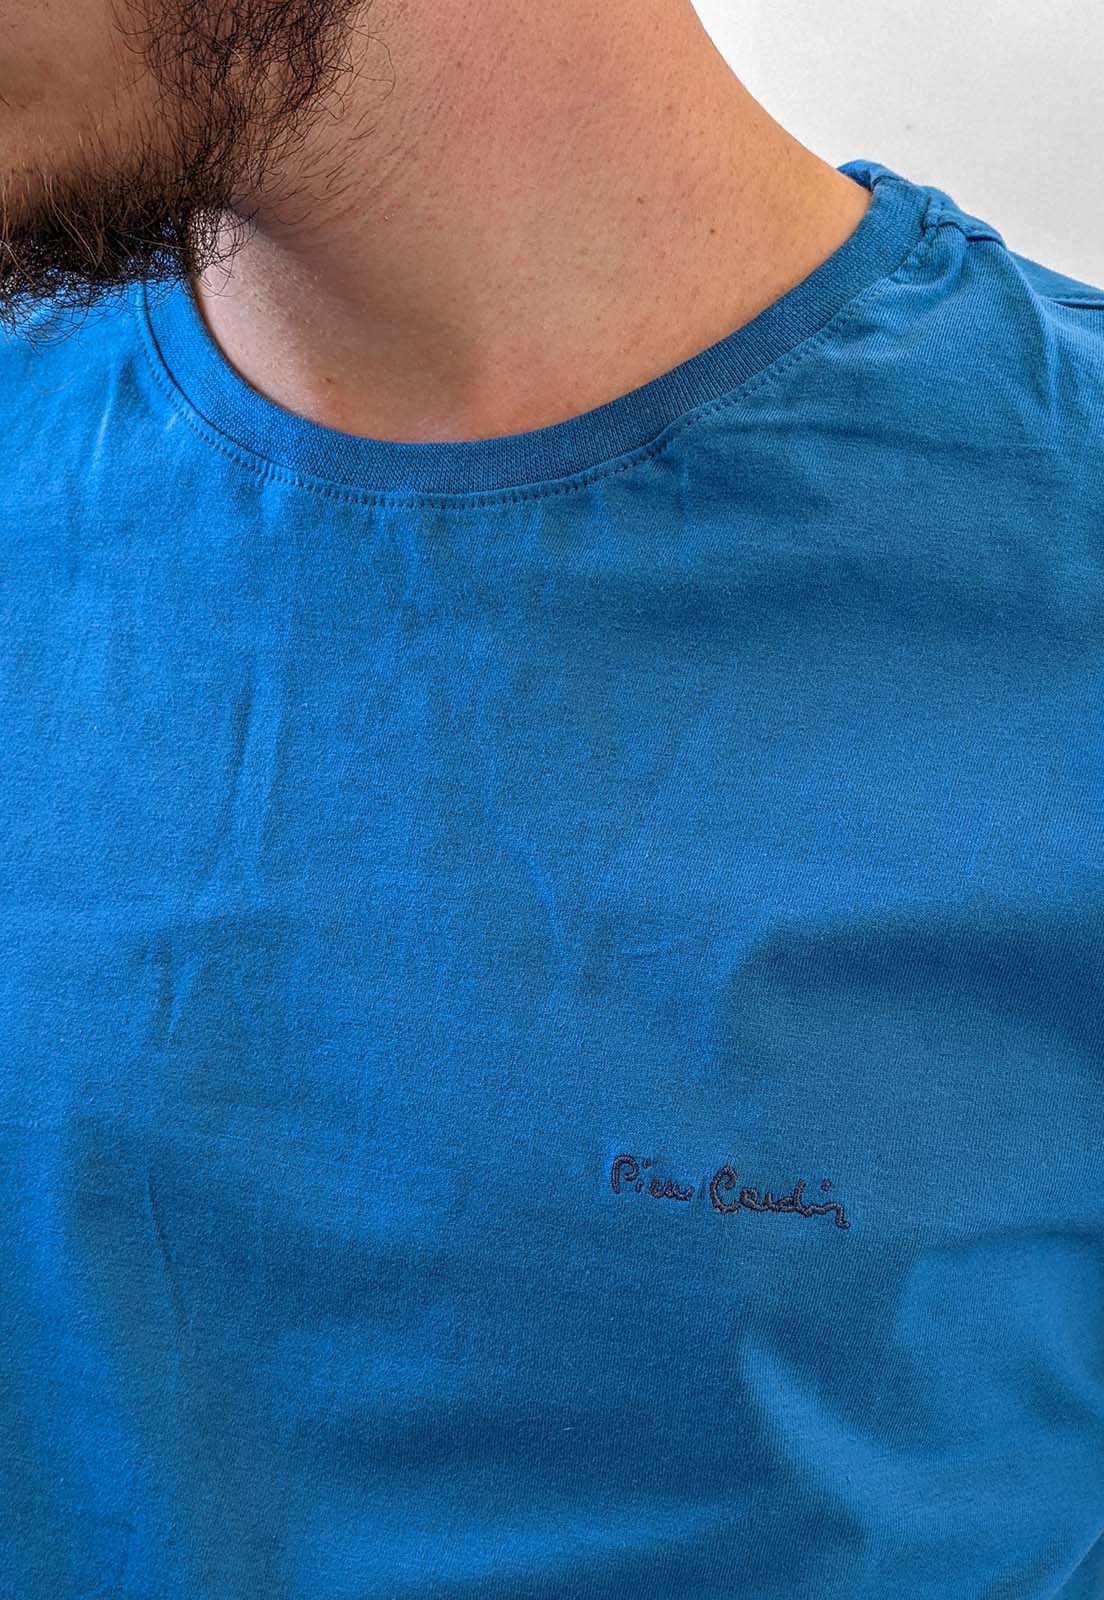 Camiseta Highstil Azul Marinho Básica Logo